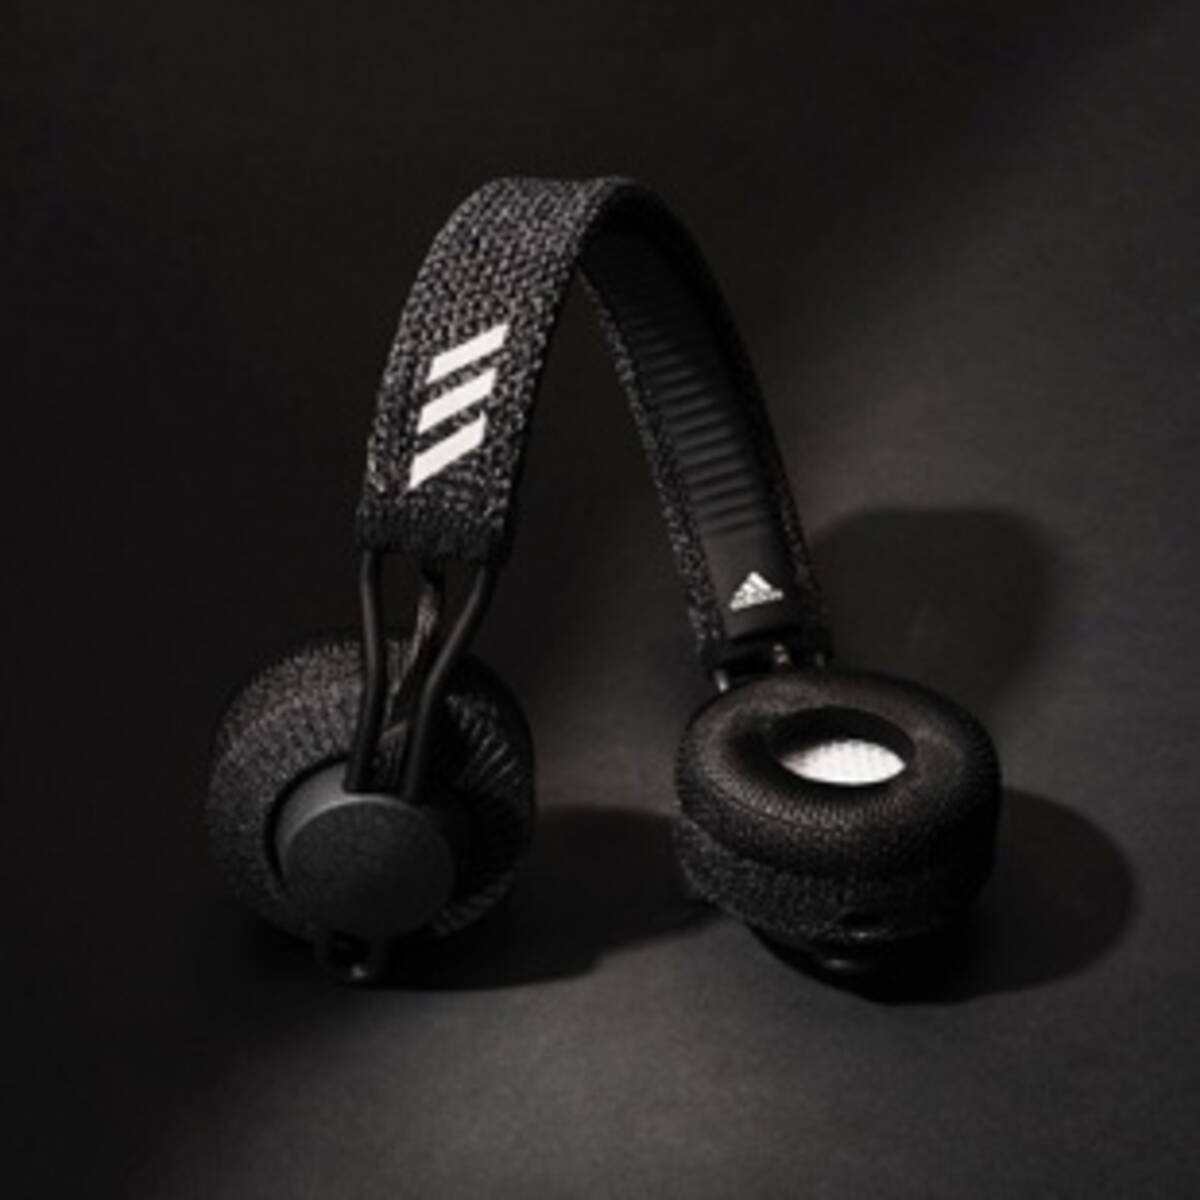 Zound Industries Adidasブランドのワイヤレスヘッドフォン Adidas Rpt 01 Sport On Ear を発表 19年9月7日 エキサイトニュース